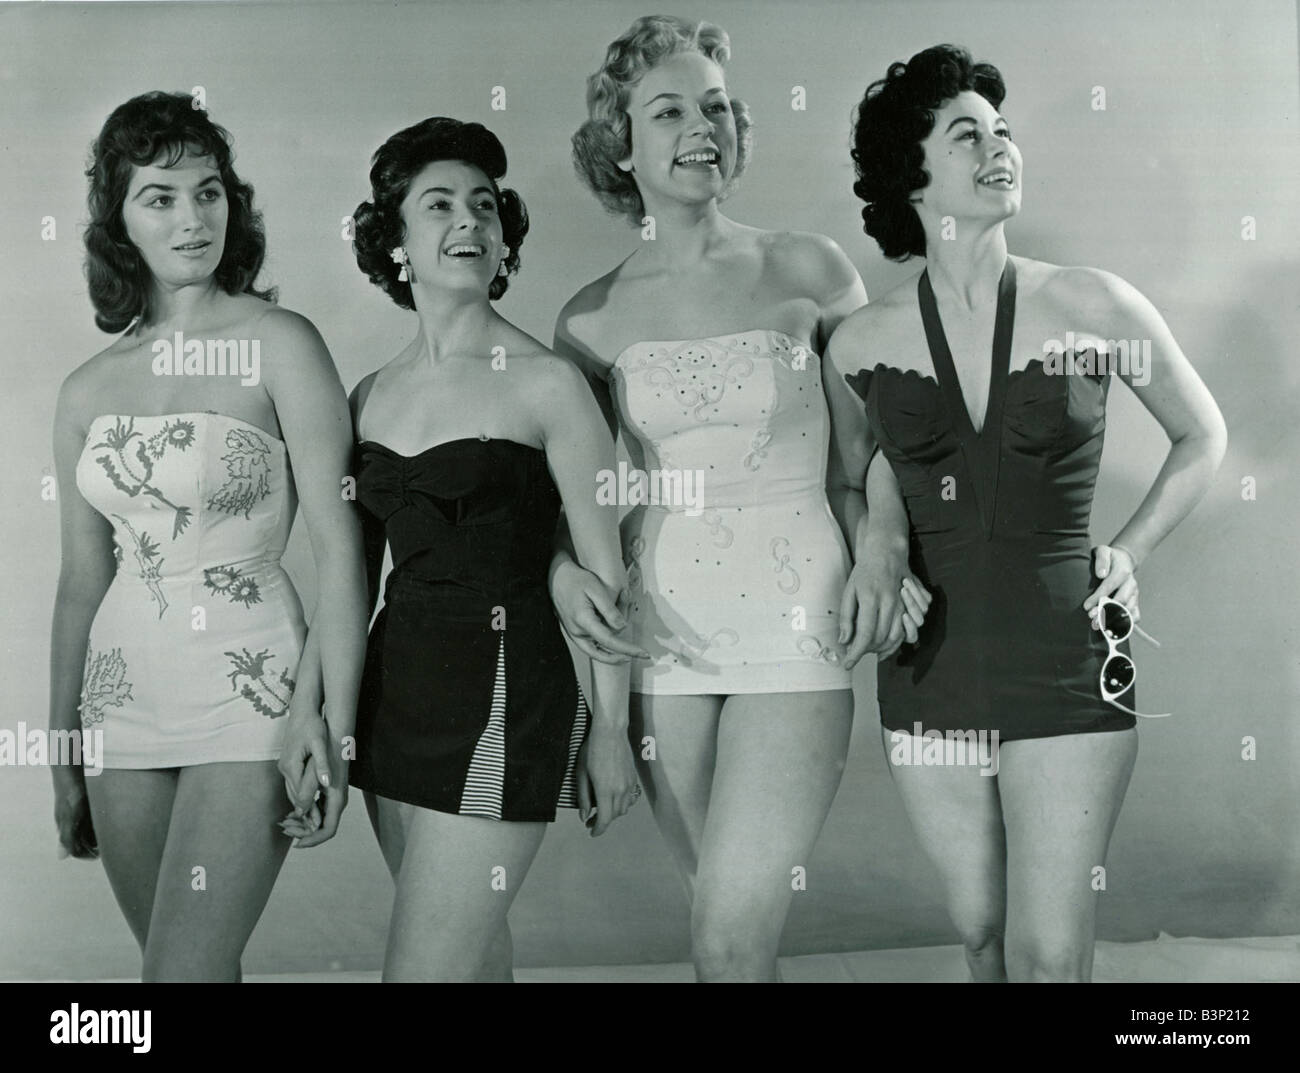 Mode der 1950er Jahre vier Modelle tragen Bademode Badeanzüge in ein Korsett  Stil ausgestattet Mieder mit einem leichten Rock Studio Bild  Stockfotografie - Alamy